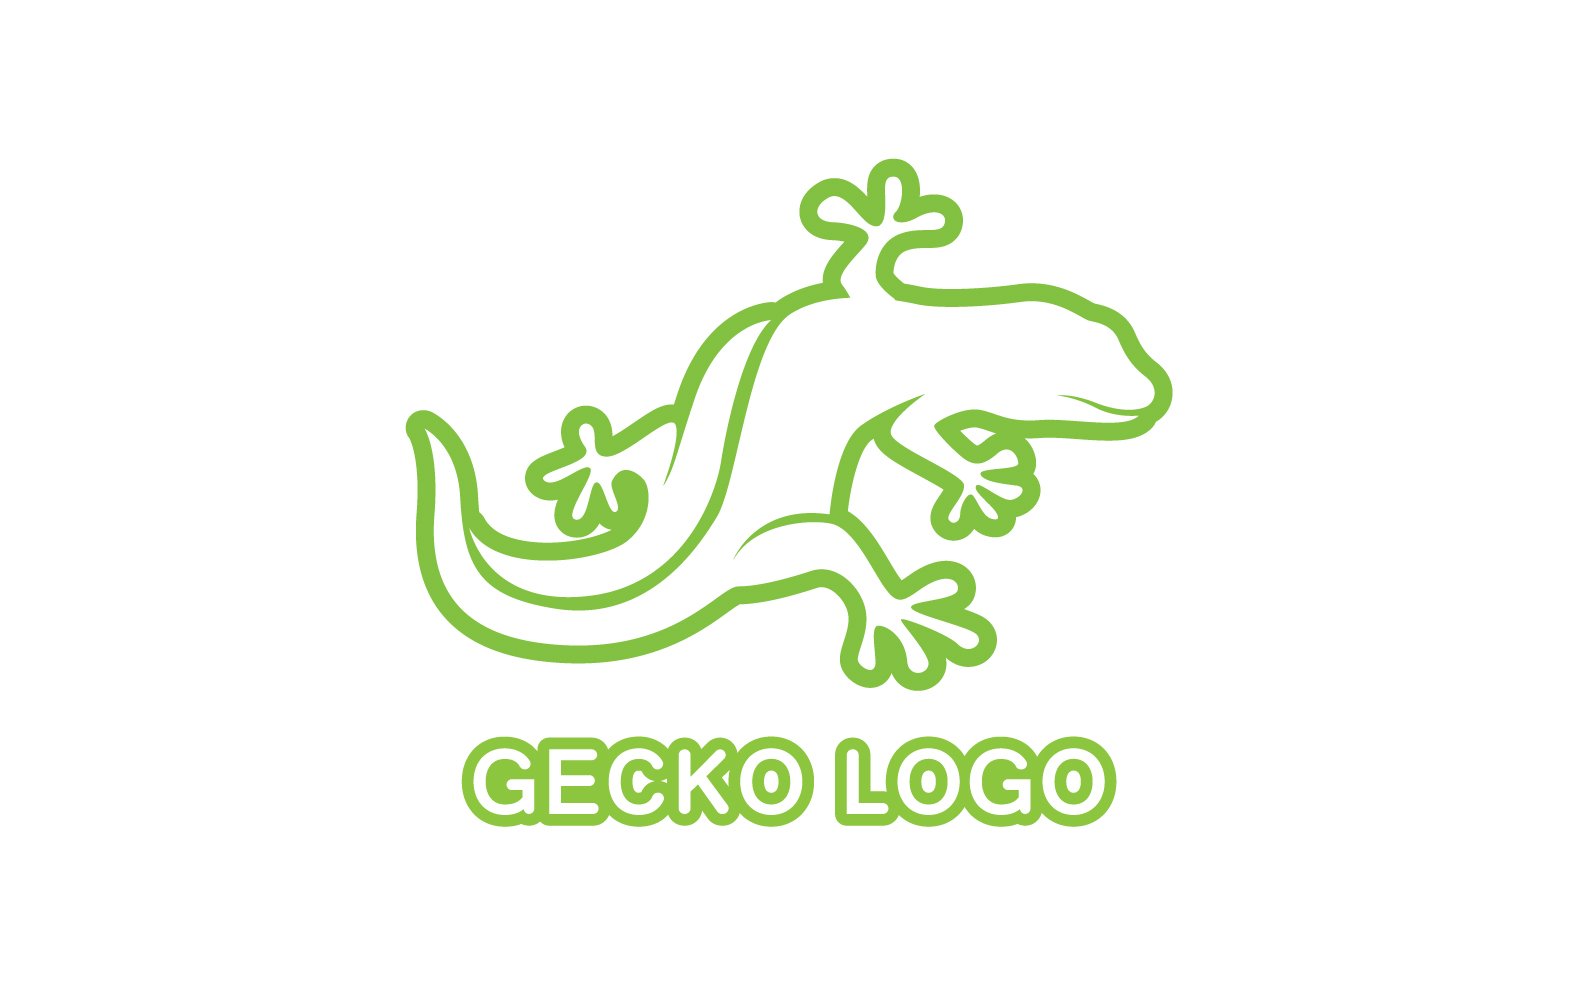 Kit Graphique #324516 Logo Gecko Divers Modles Web - Logo template Preview